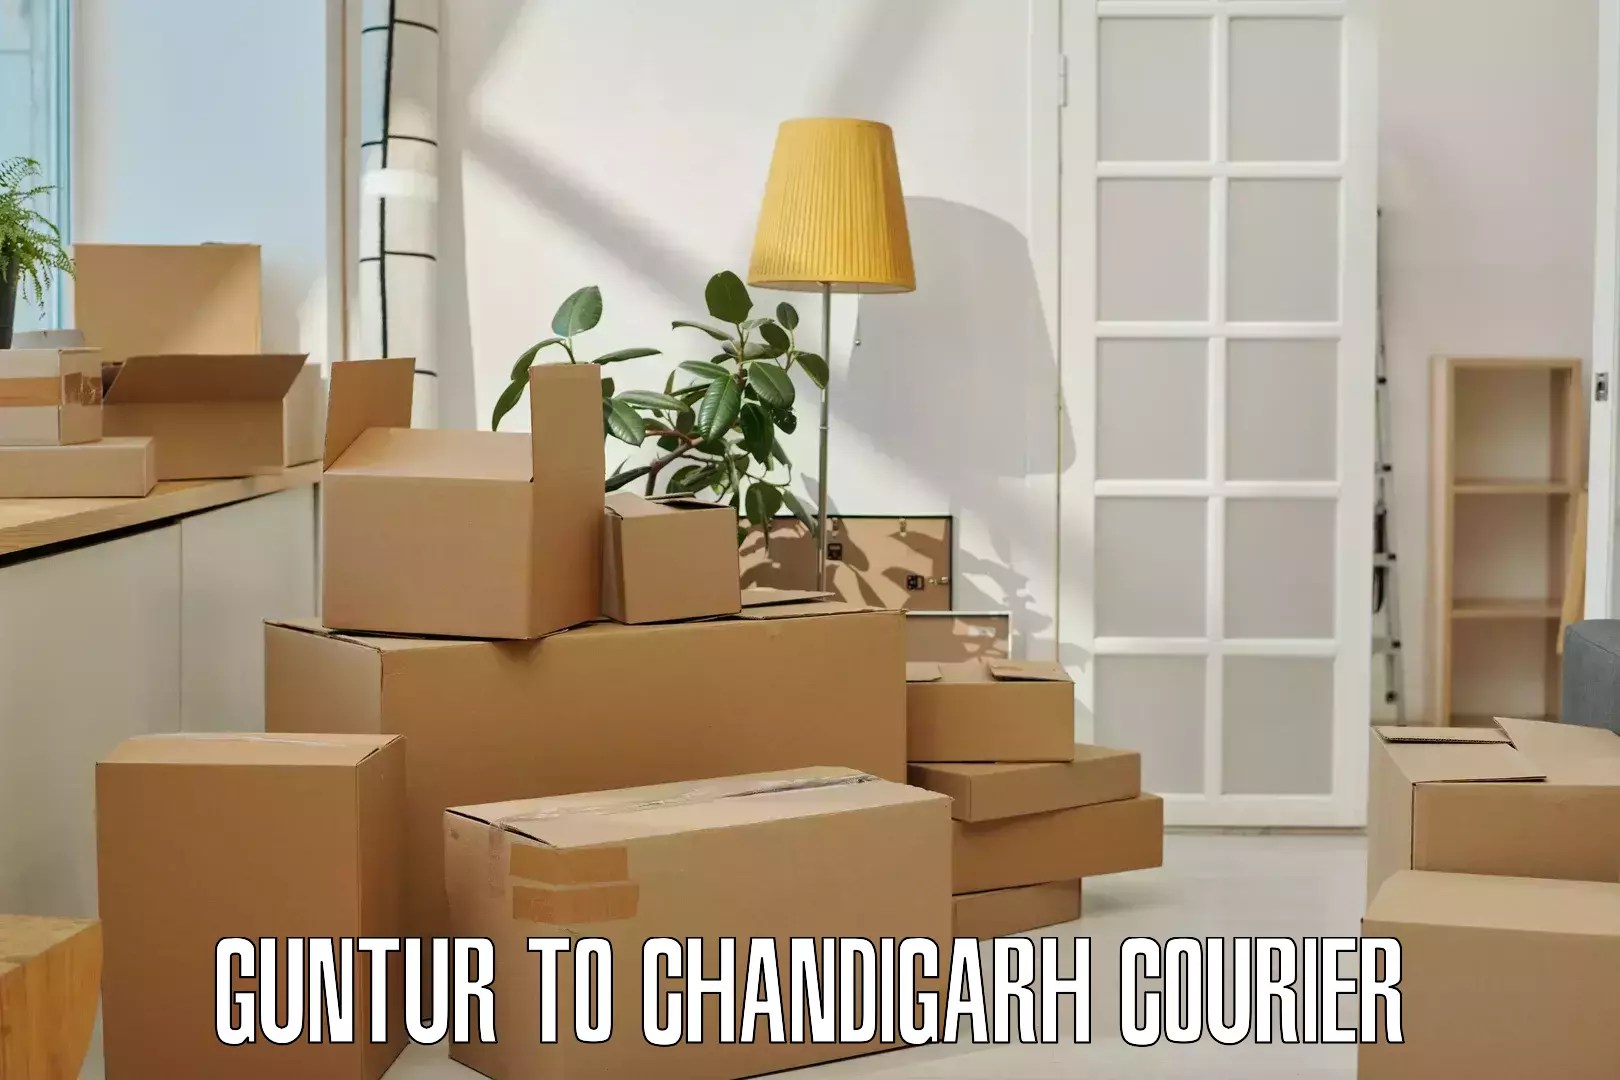 Premium delivery services Guntur to Chandigarh